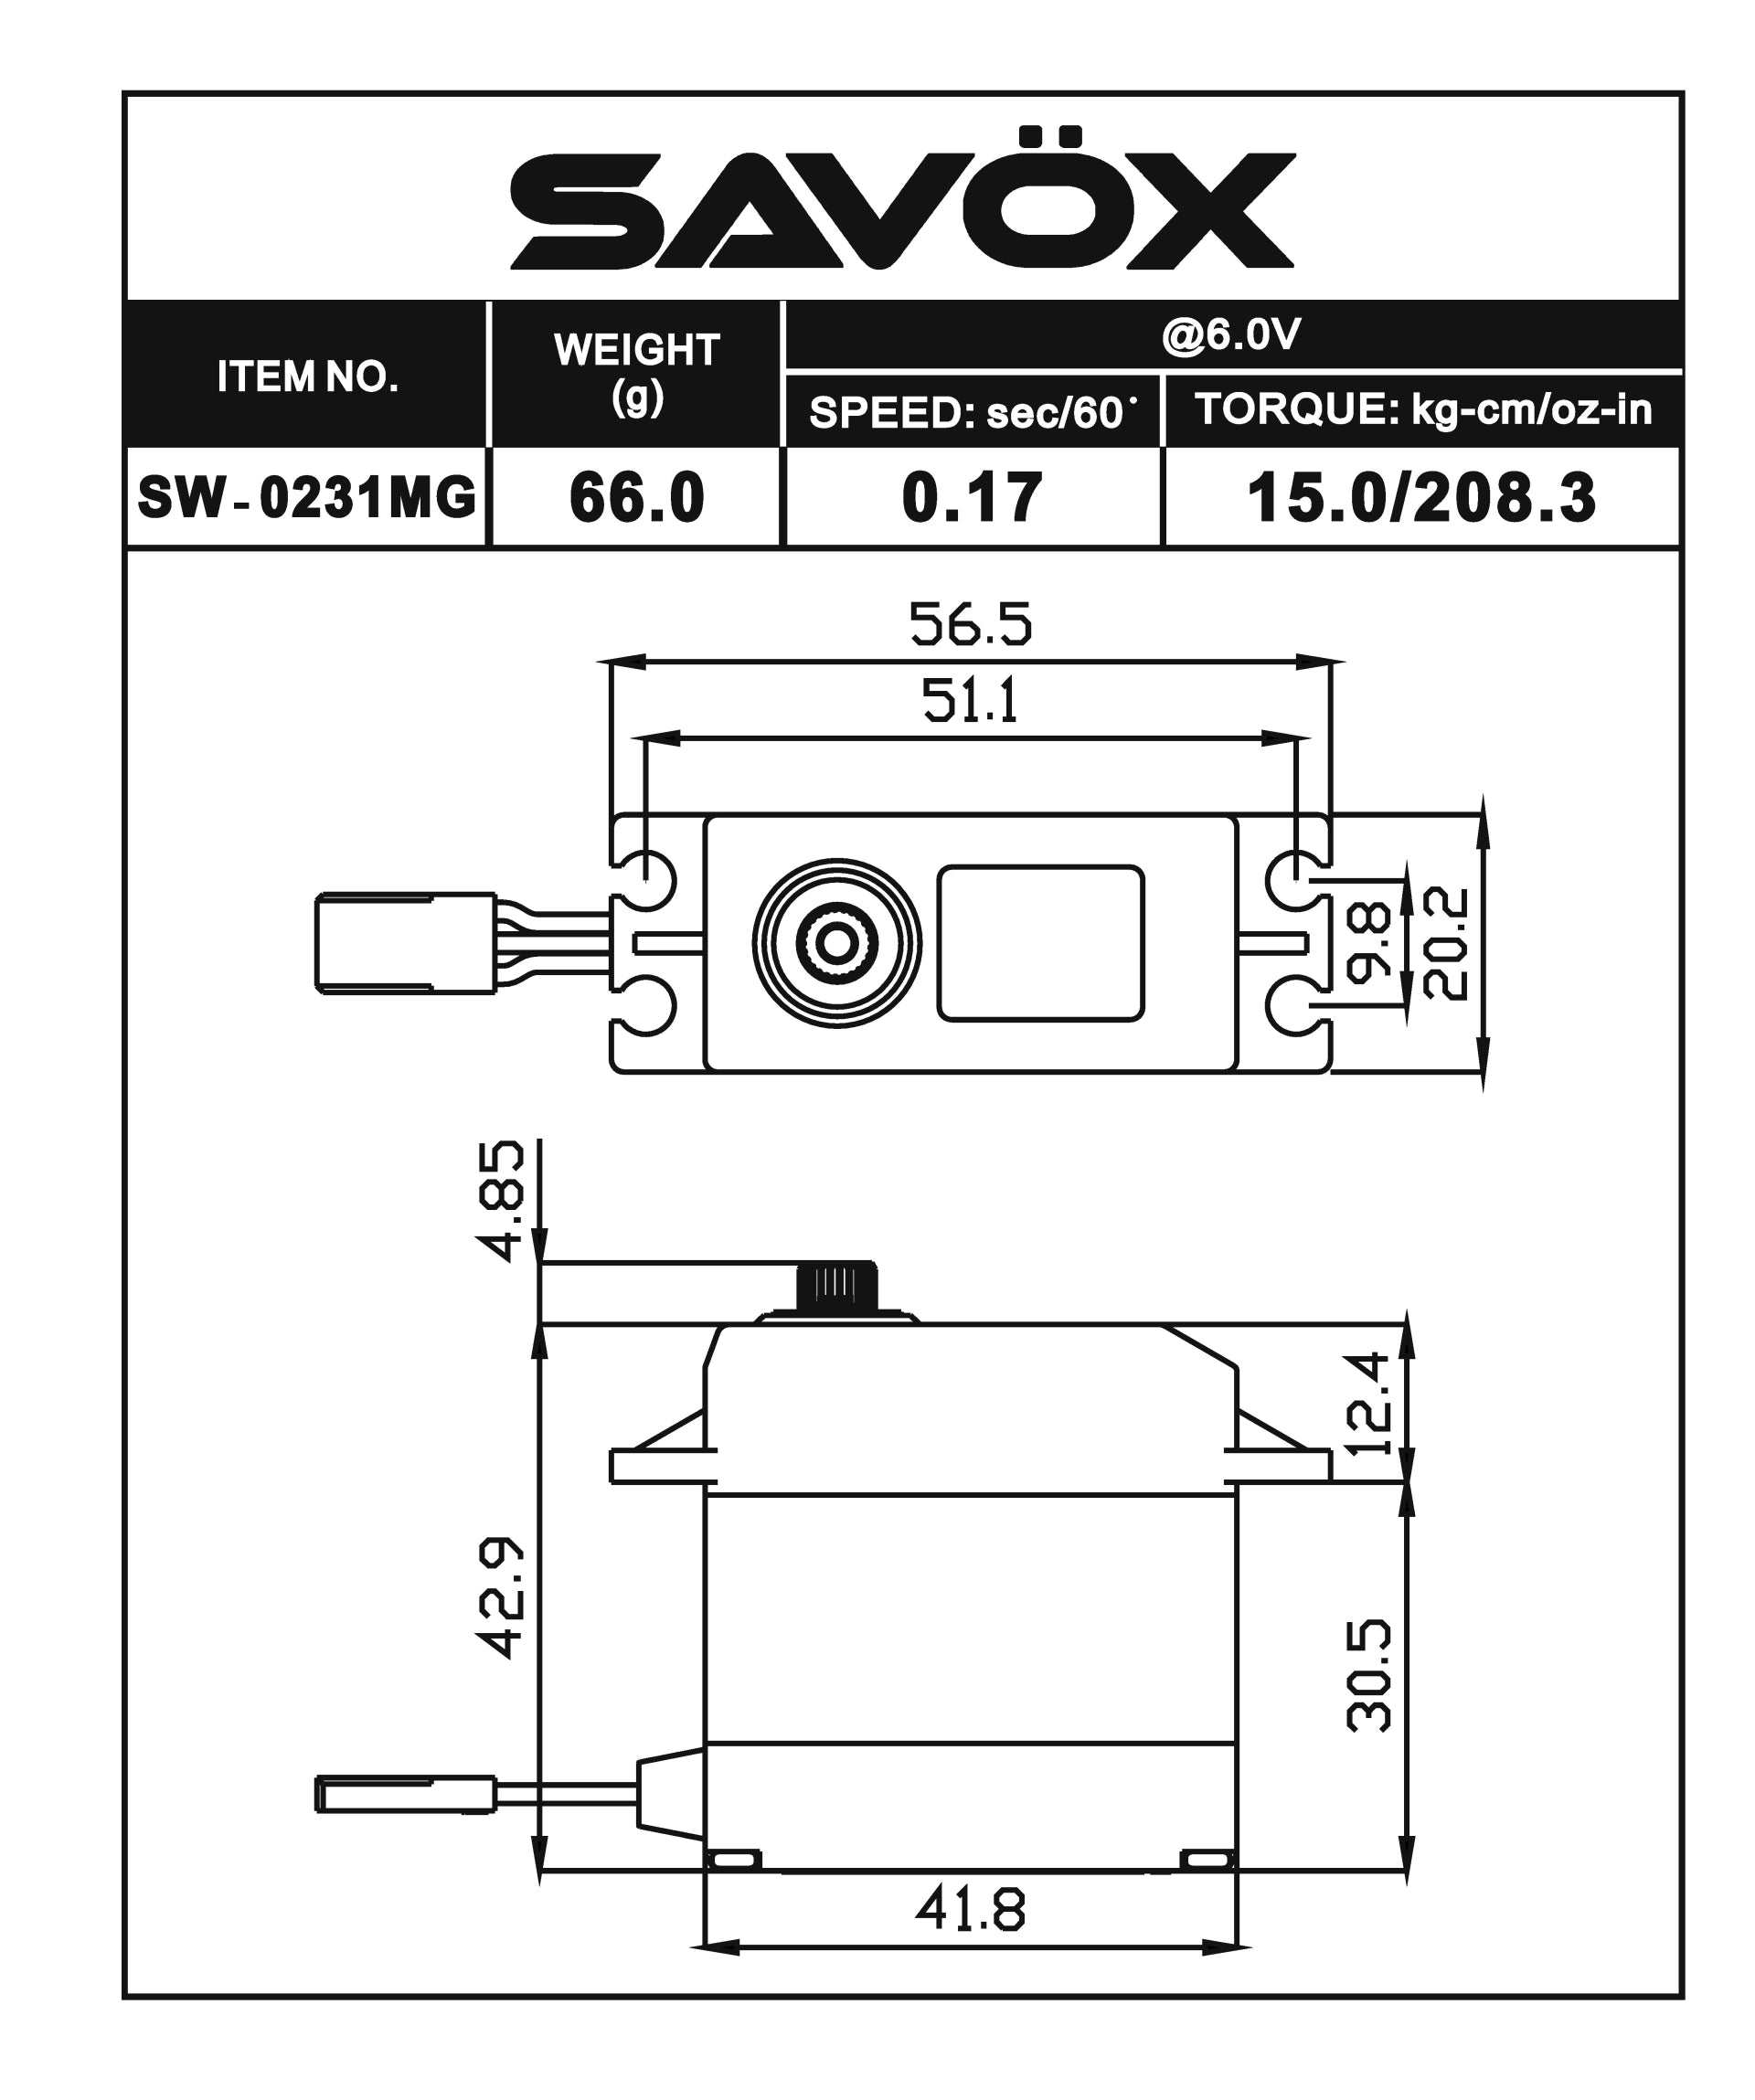 Savox SW-0231MGP "Tall" Waterproof Metal Gear Digital Servo